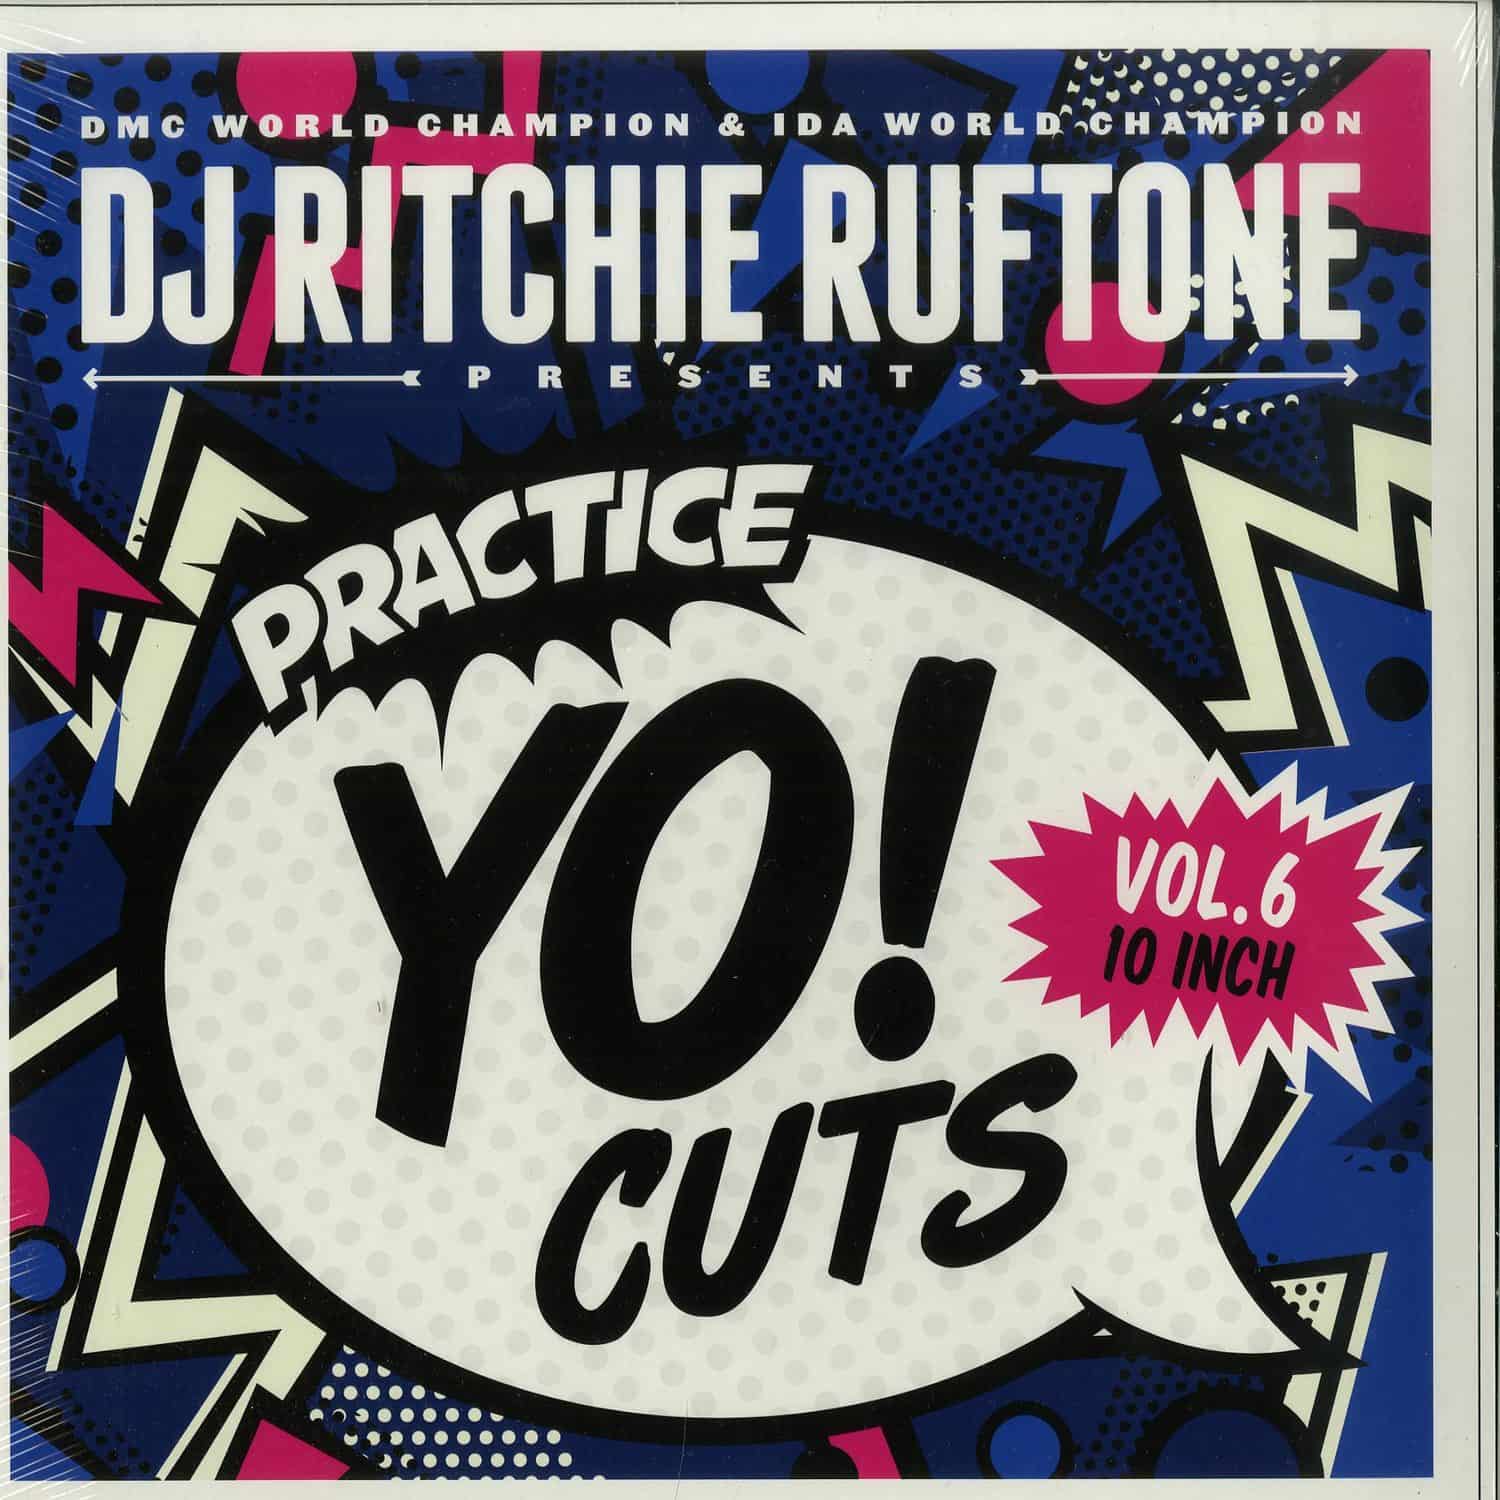 DJ Ritchie Ruftone - PRACTICE YO! CUTS VOL 6 